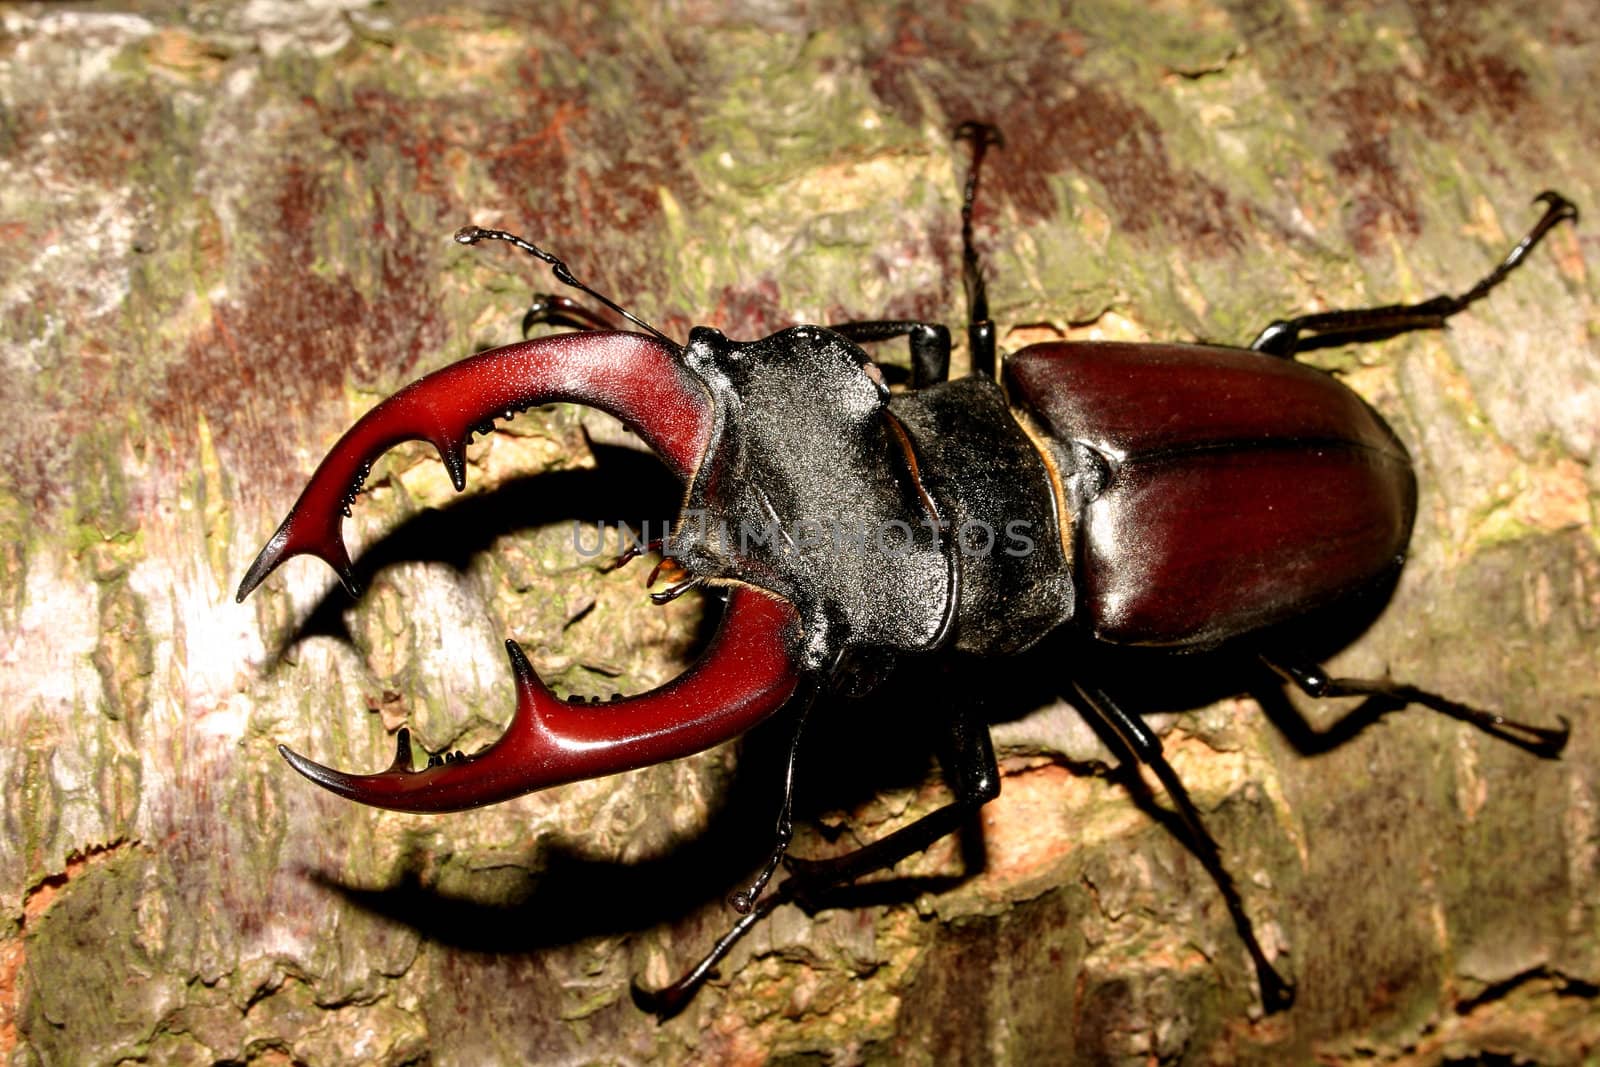 Stag beetle (Lucanus cervus) - Male on a tree trunk